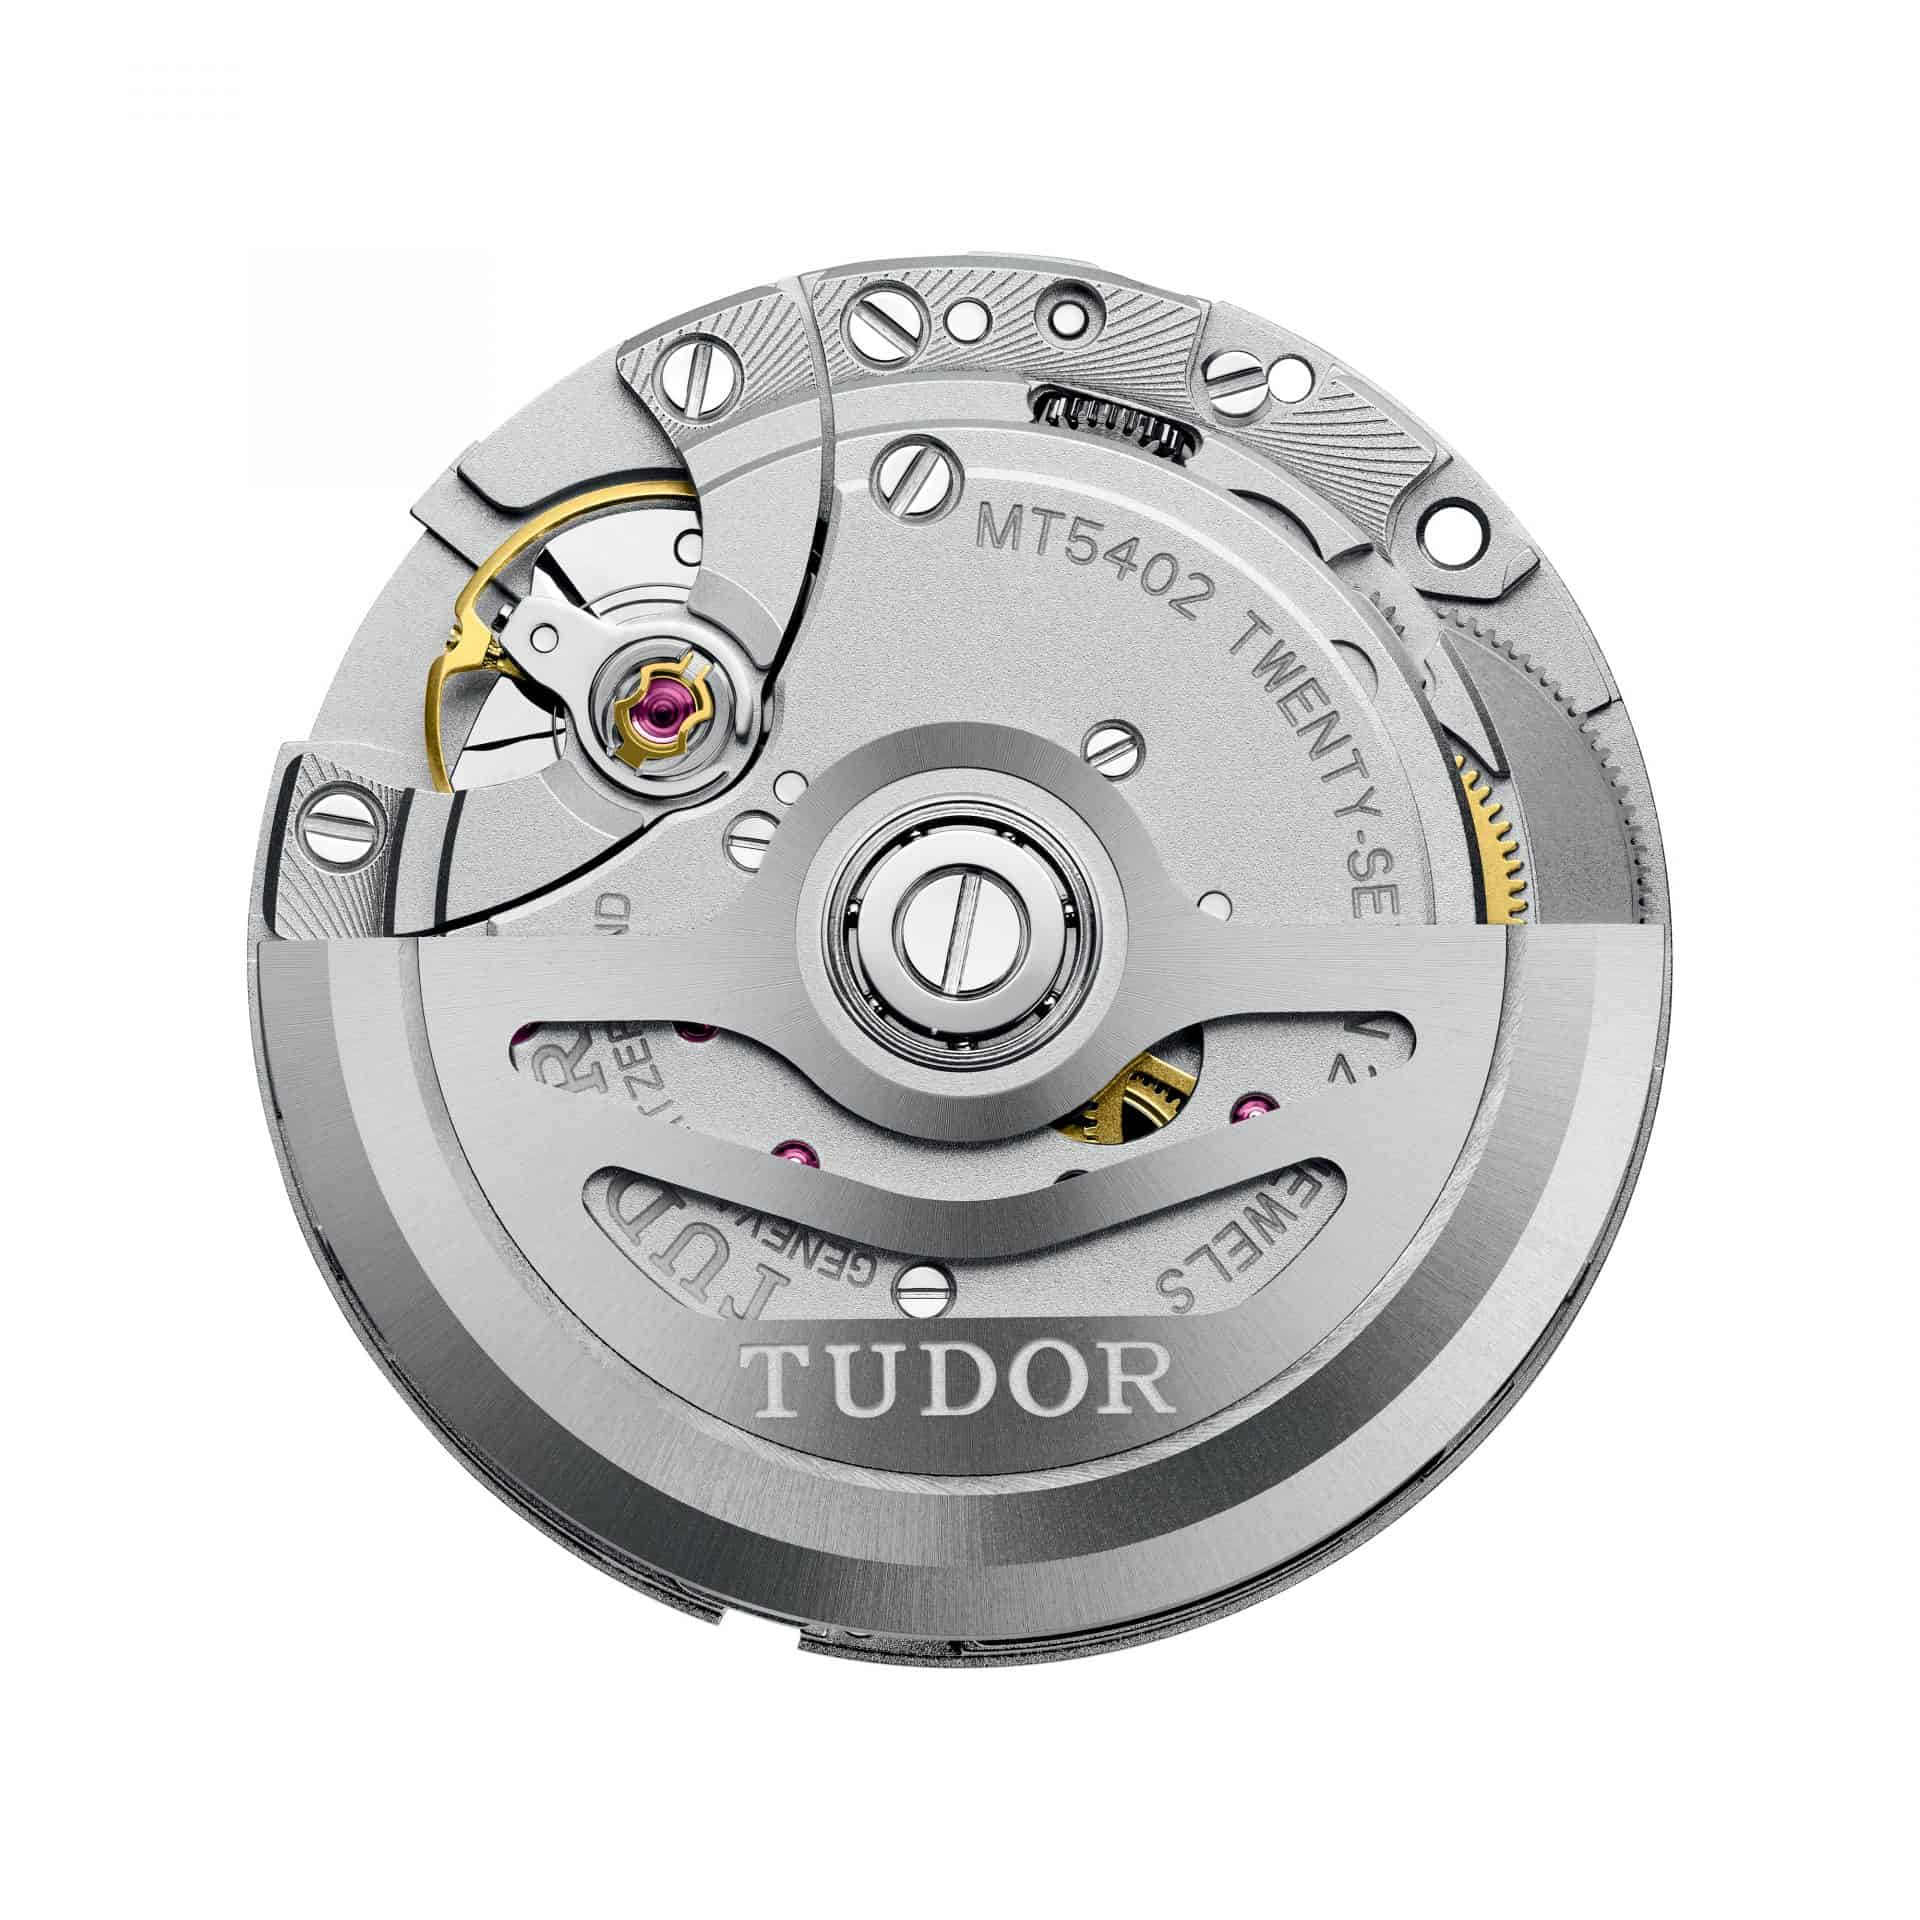 Tudor hat für mittelgroße Armbanduhren das Manufakturkaliber MT5402 mit Rotor-Selbstaufzug 